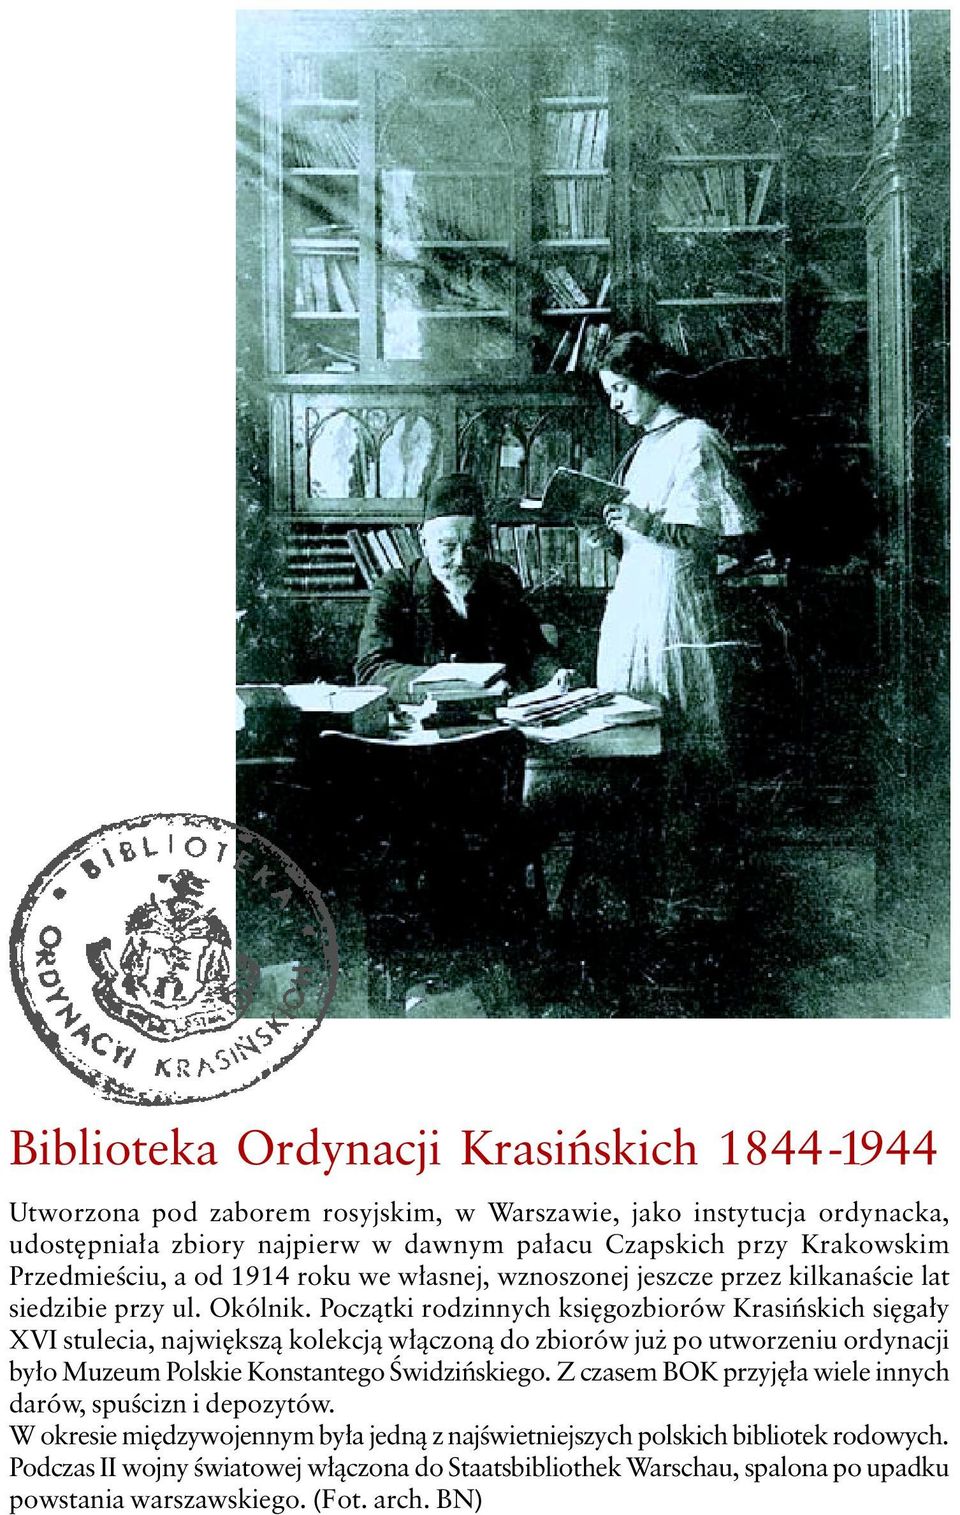 Początki rodzinnych księgozbiorów Krasińskich sięgały XVI stulecia, największą kolekcją włączoną do zbiorów już po utworzeniu ordynacji było Muzeum Polskie Konstantego Świdzińskiego.